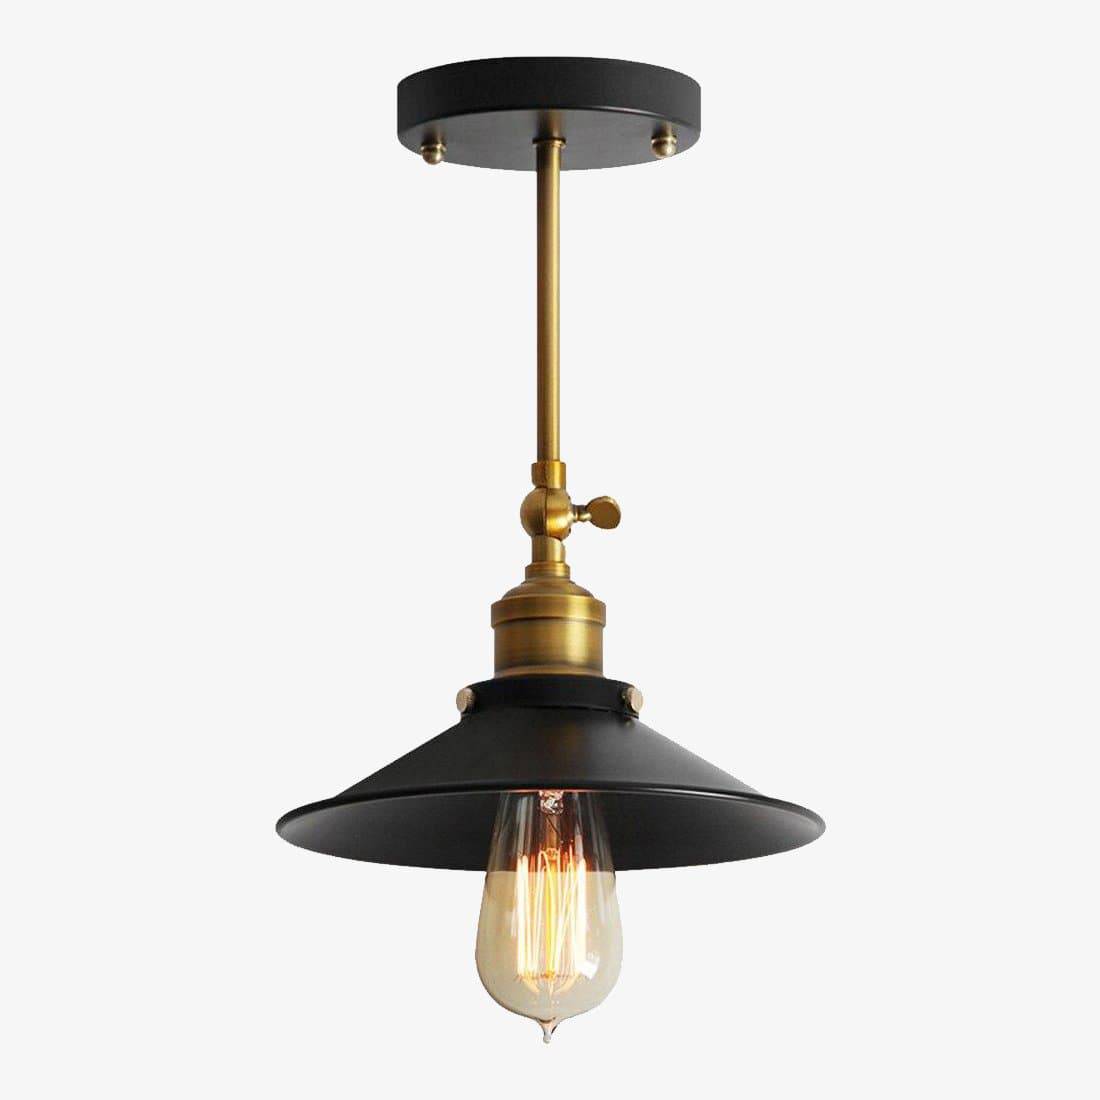 Plafon industrial LED em metal dourado e preto ajustável